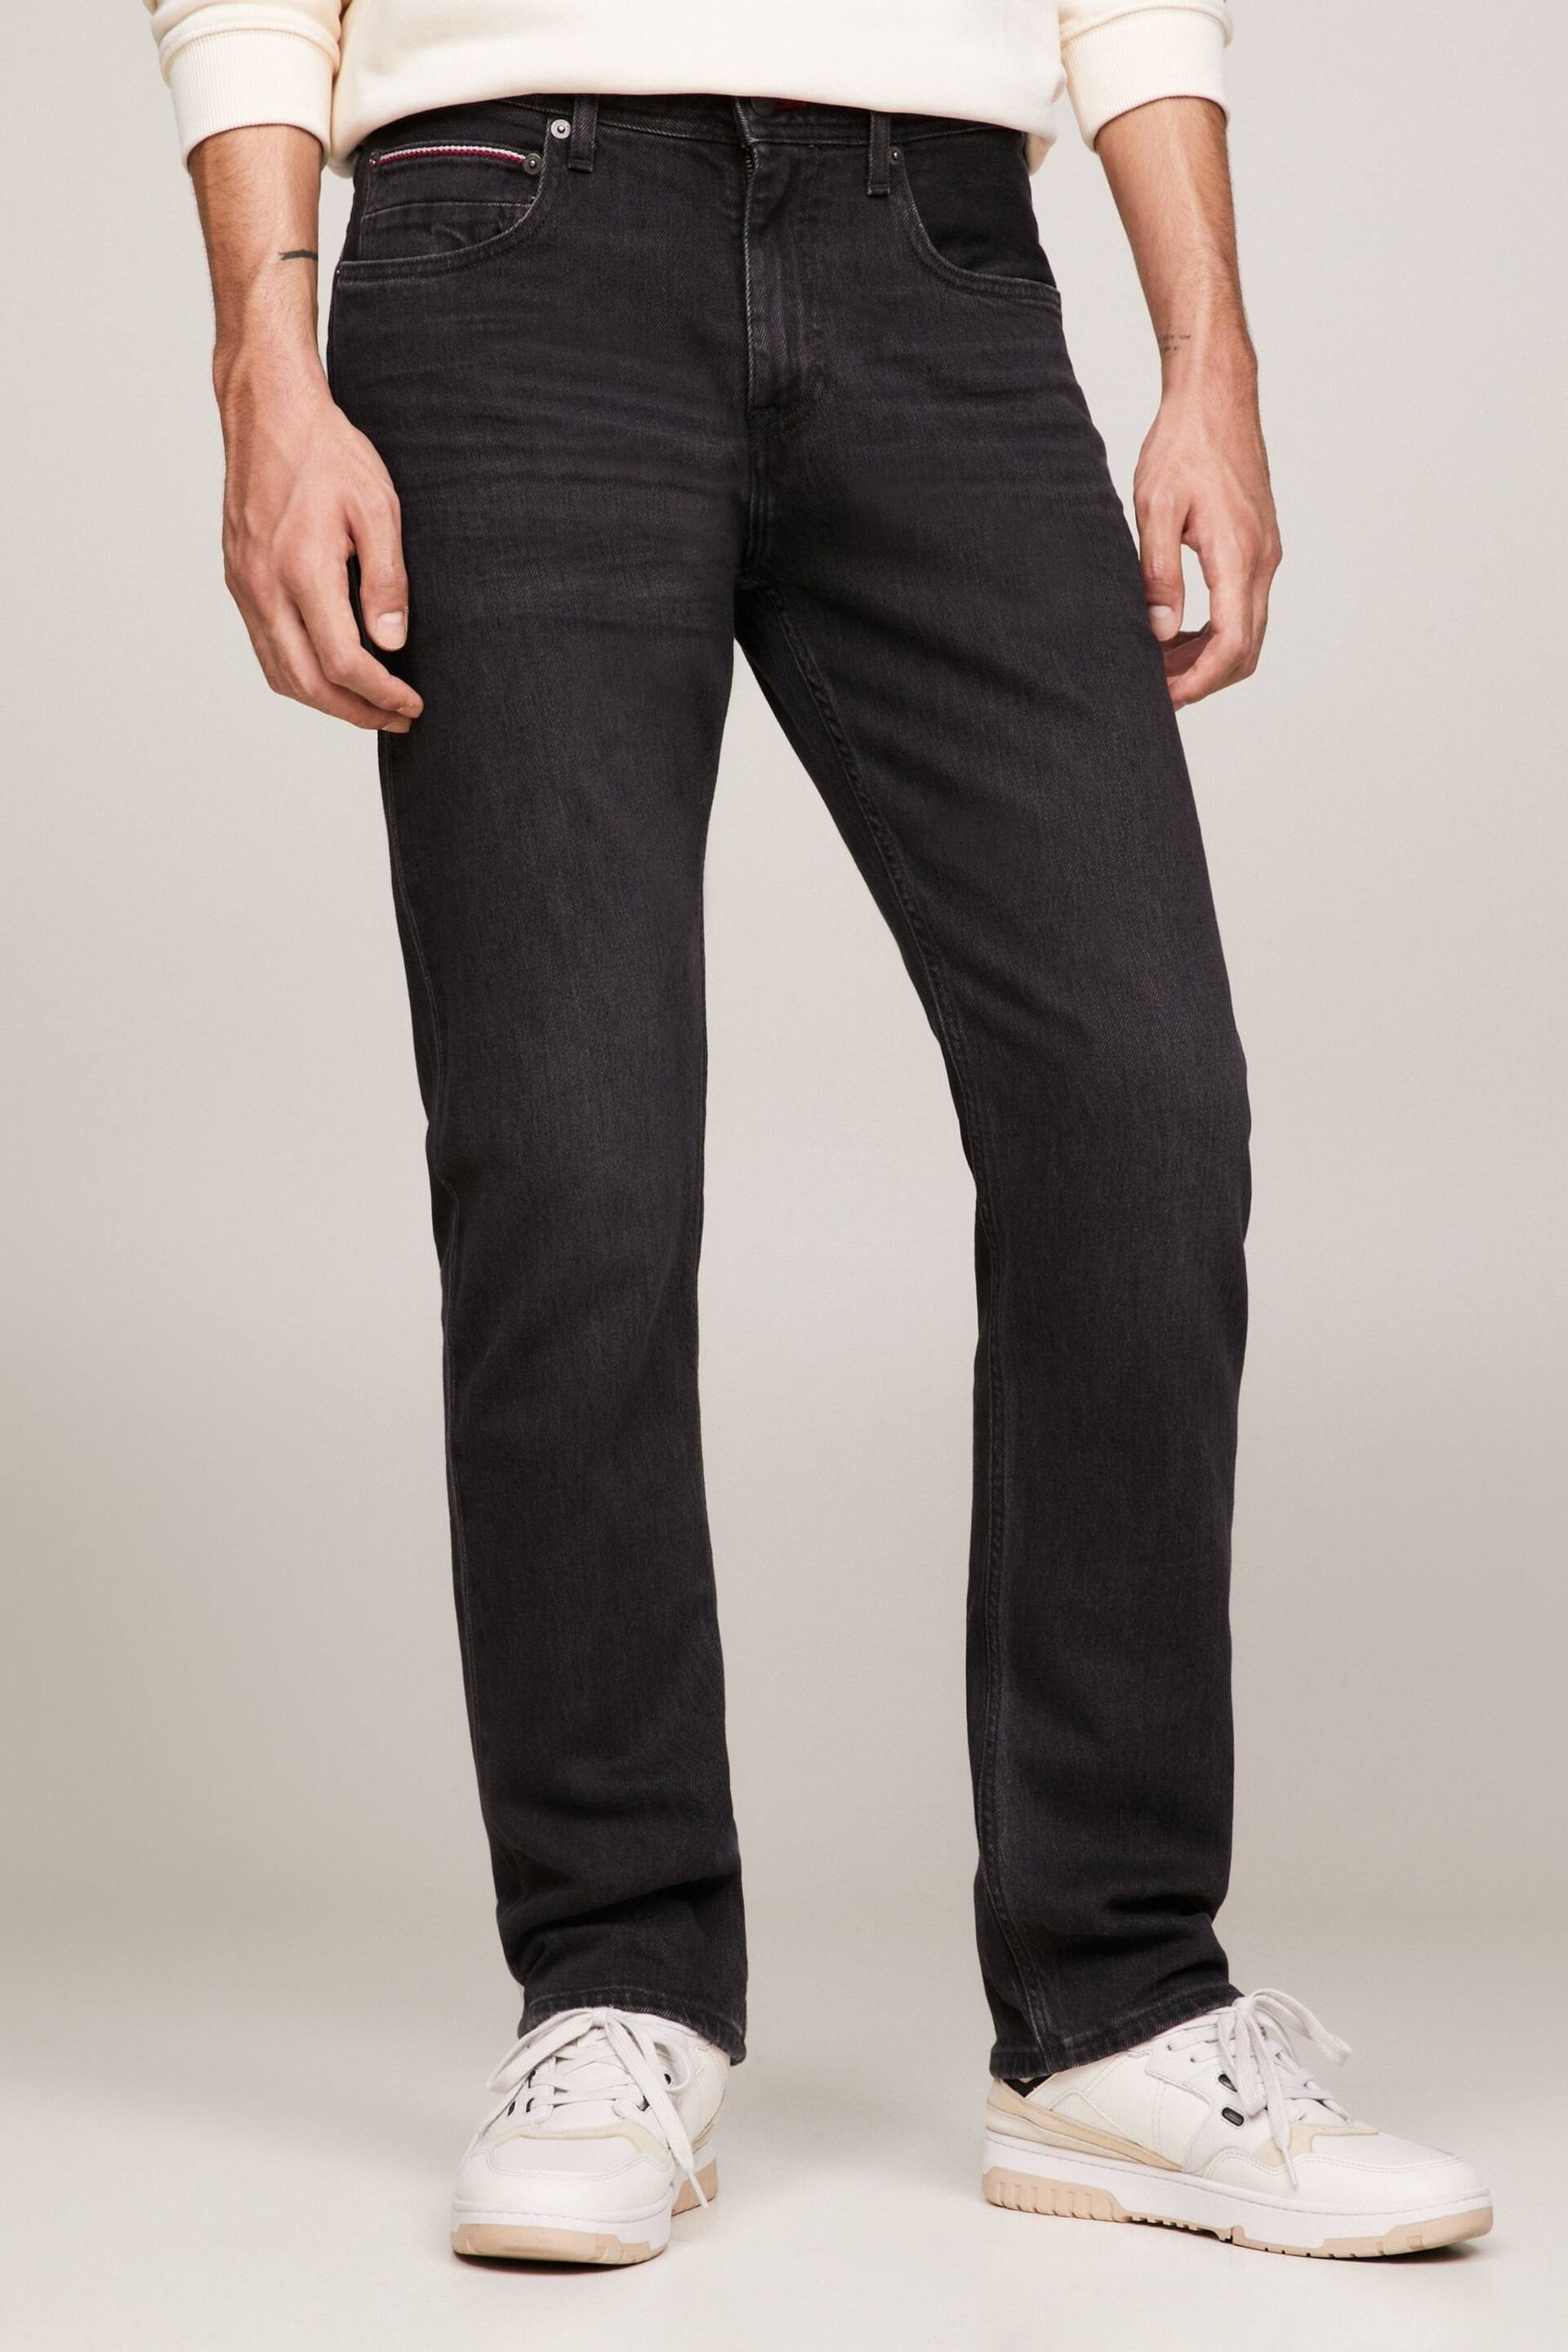 Tommy Hilfiger Mercer Black Jeans - Image 1 of 5